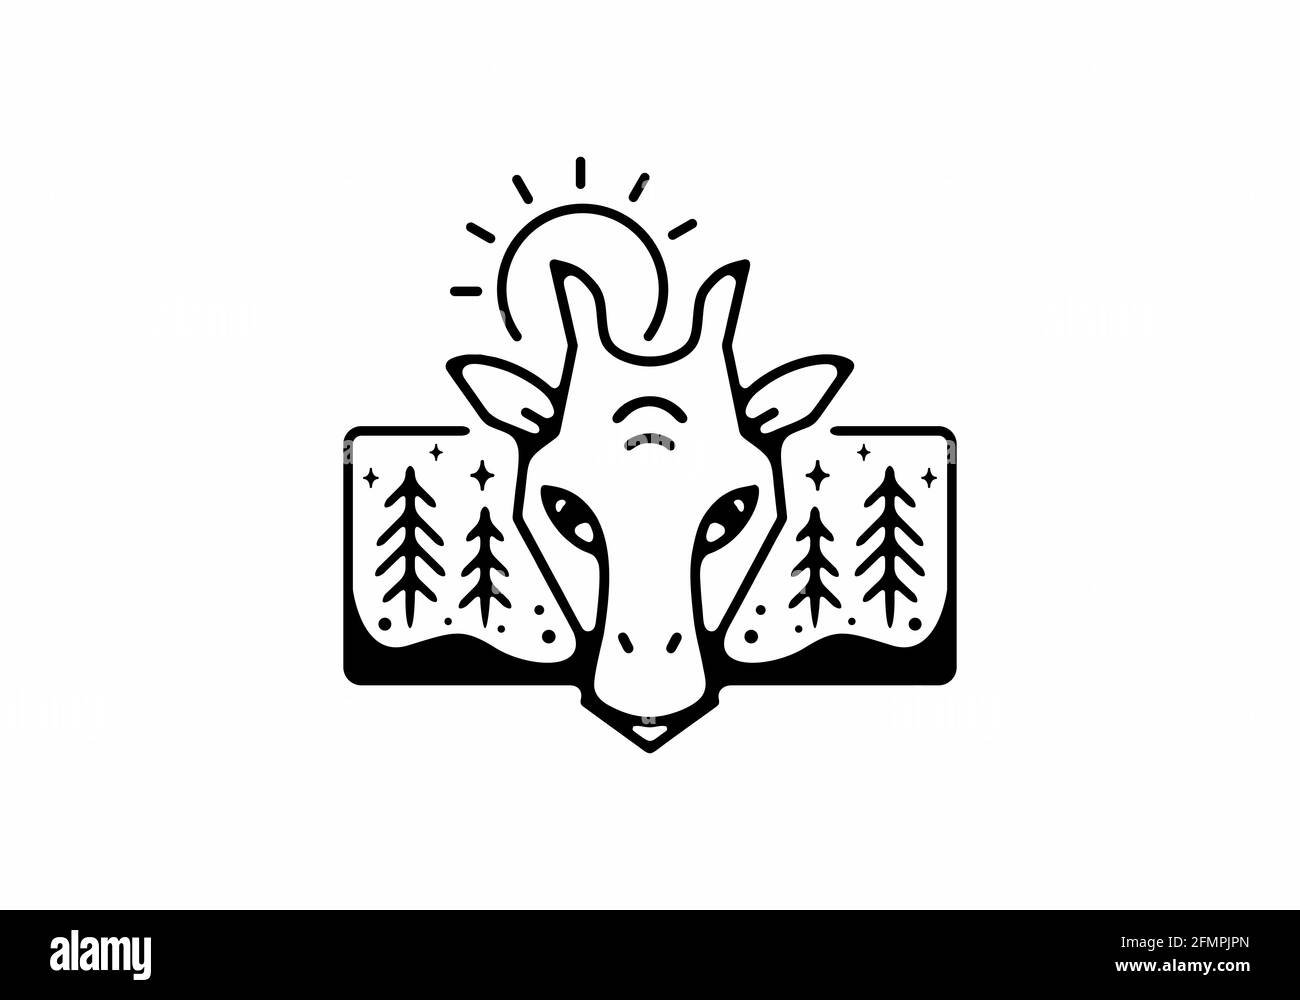 Black line art illustration of giraffe design Stock Vector